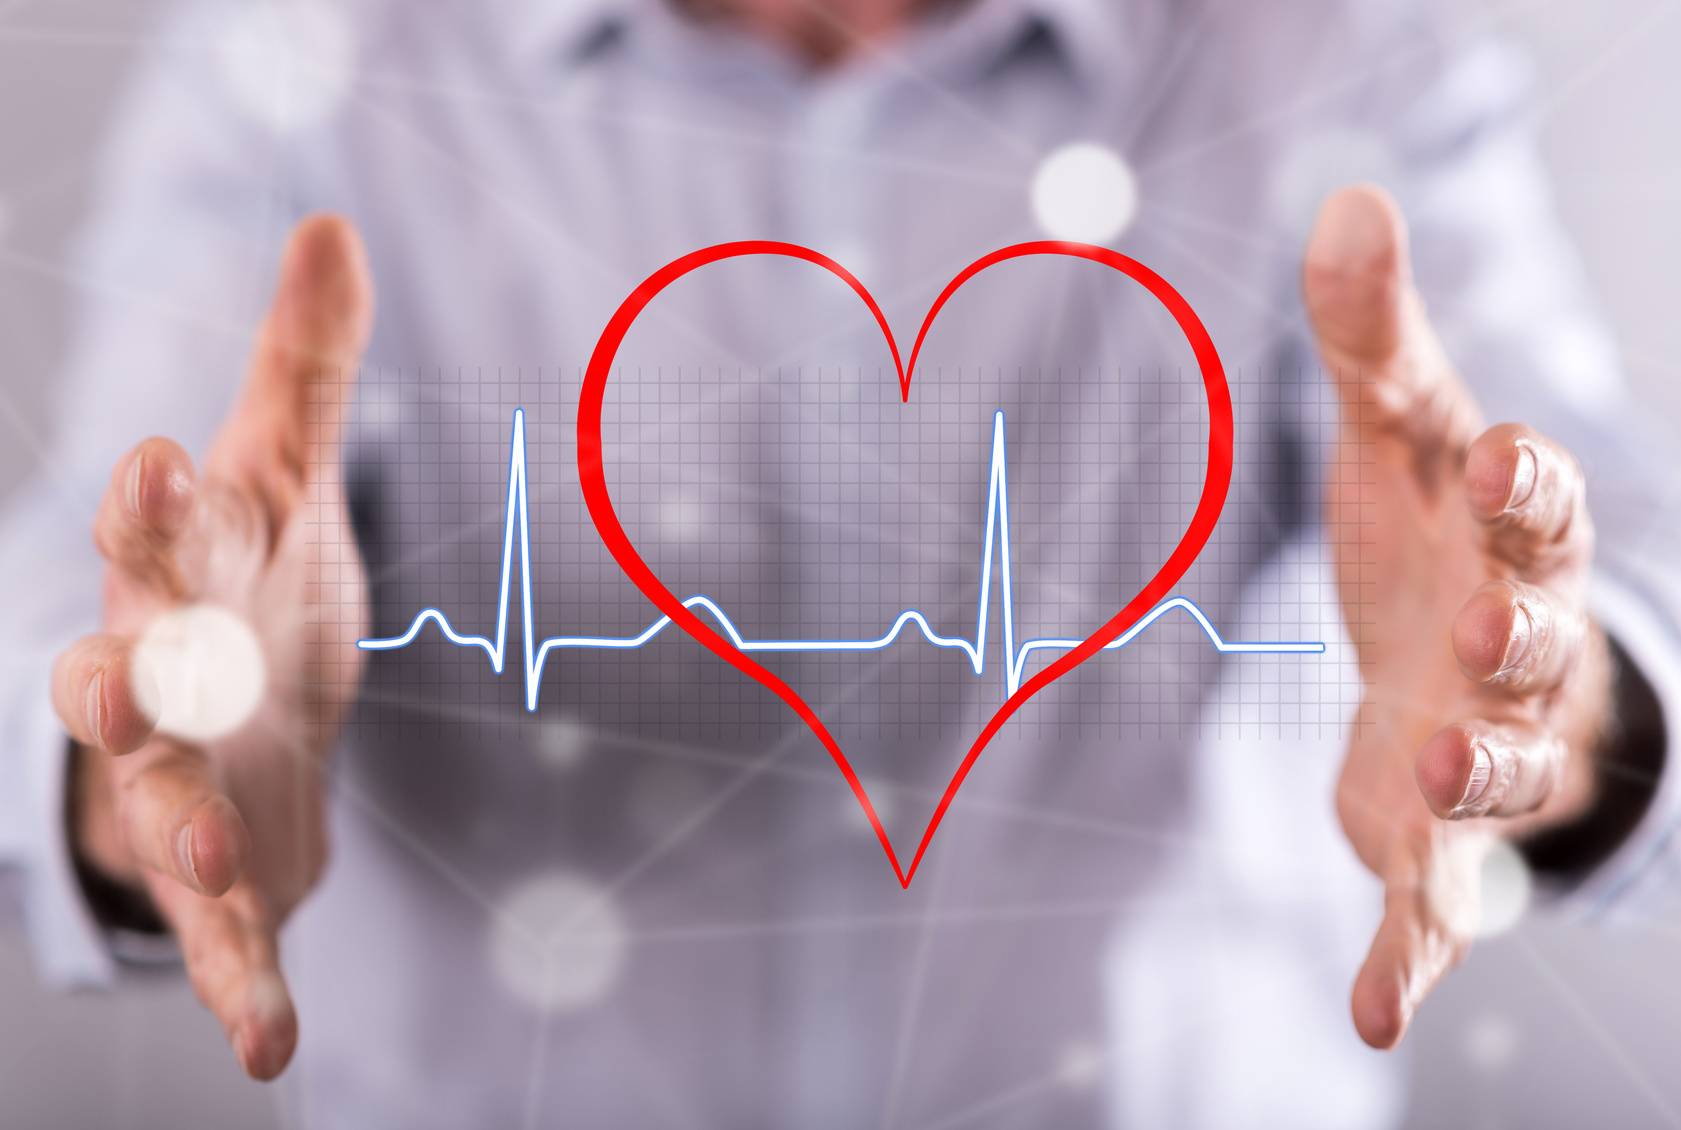 Мучают экстрасистолы, помогите - вопрос кардиологу - 03 онлайн